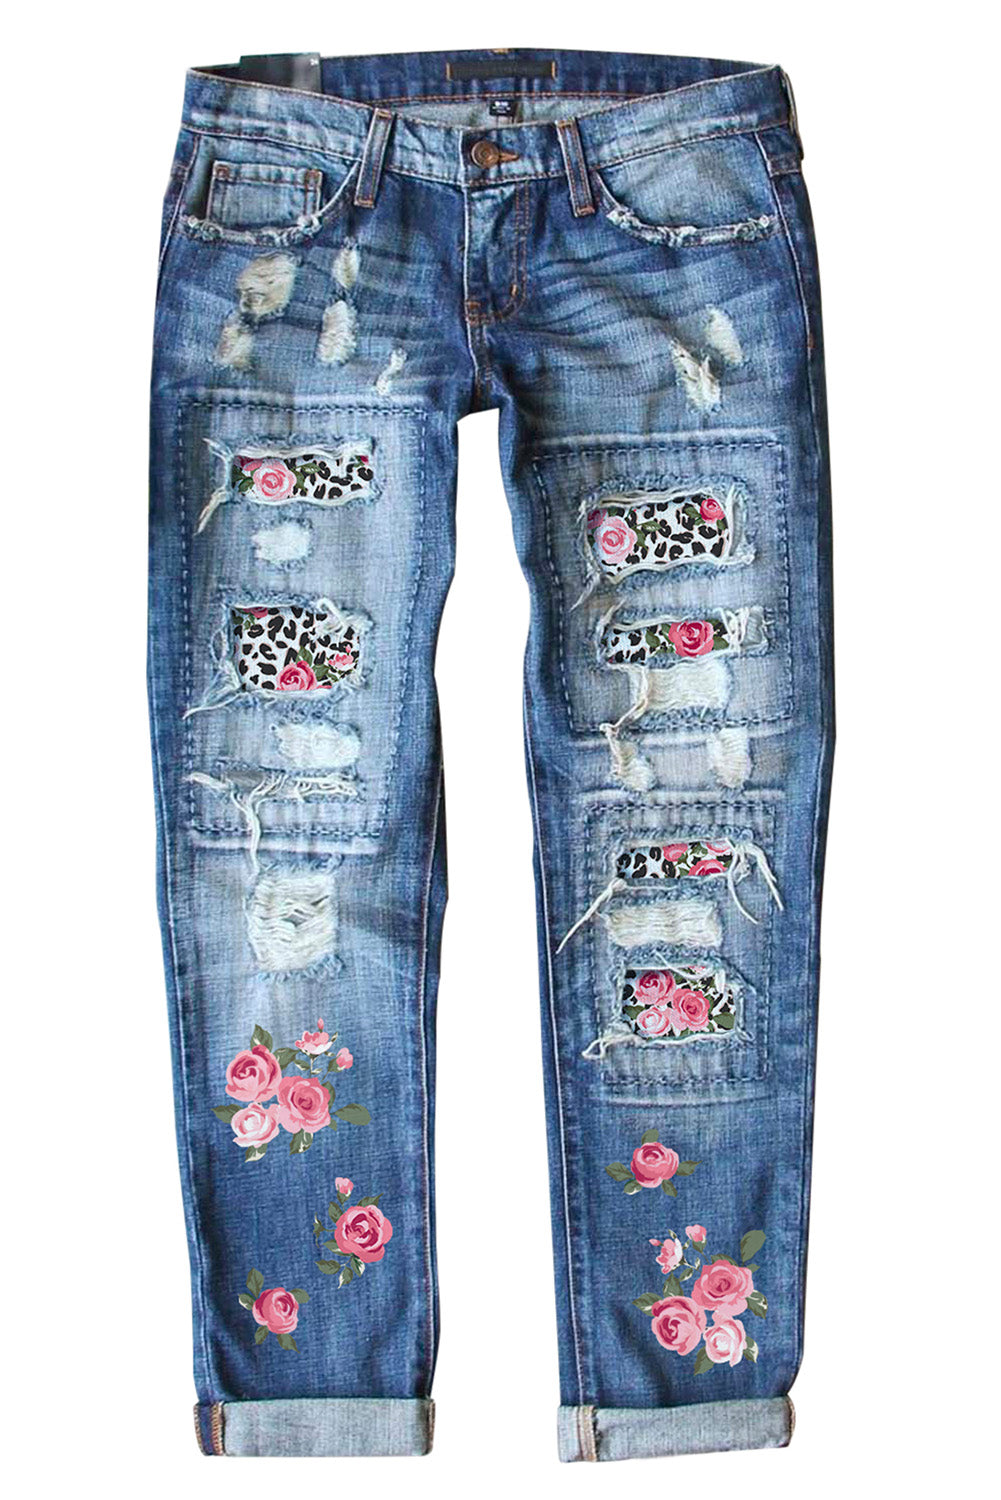 Sky Blue Womens Boyfriend Jeans Floral Leopard Slim Fit Distressed Pants LC787552-4